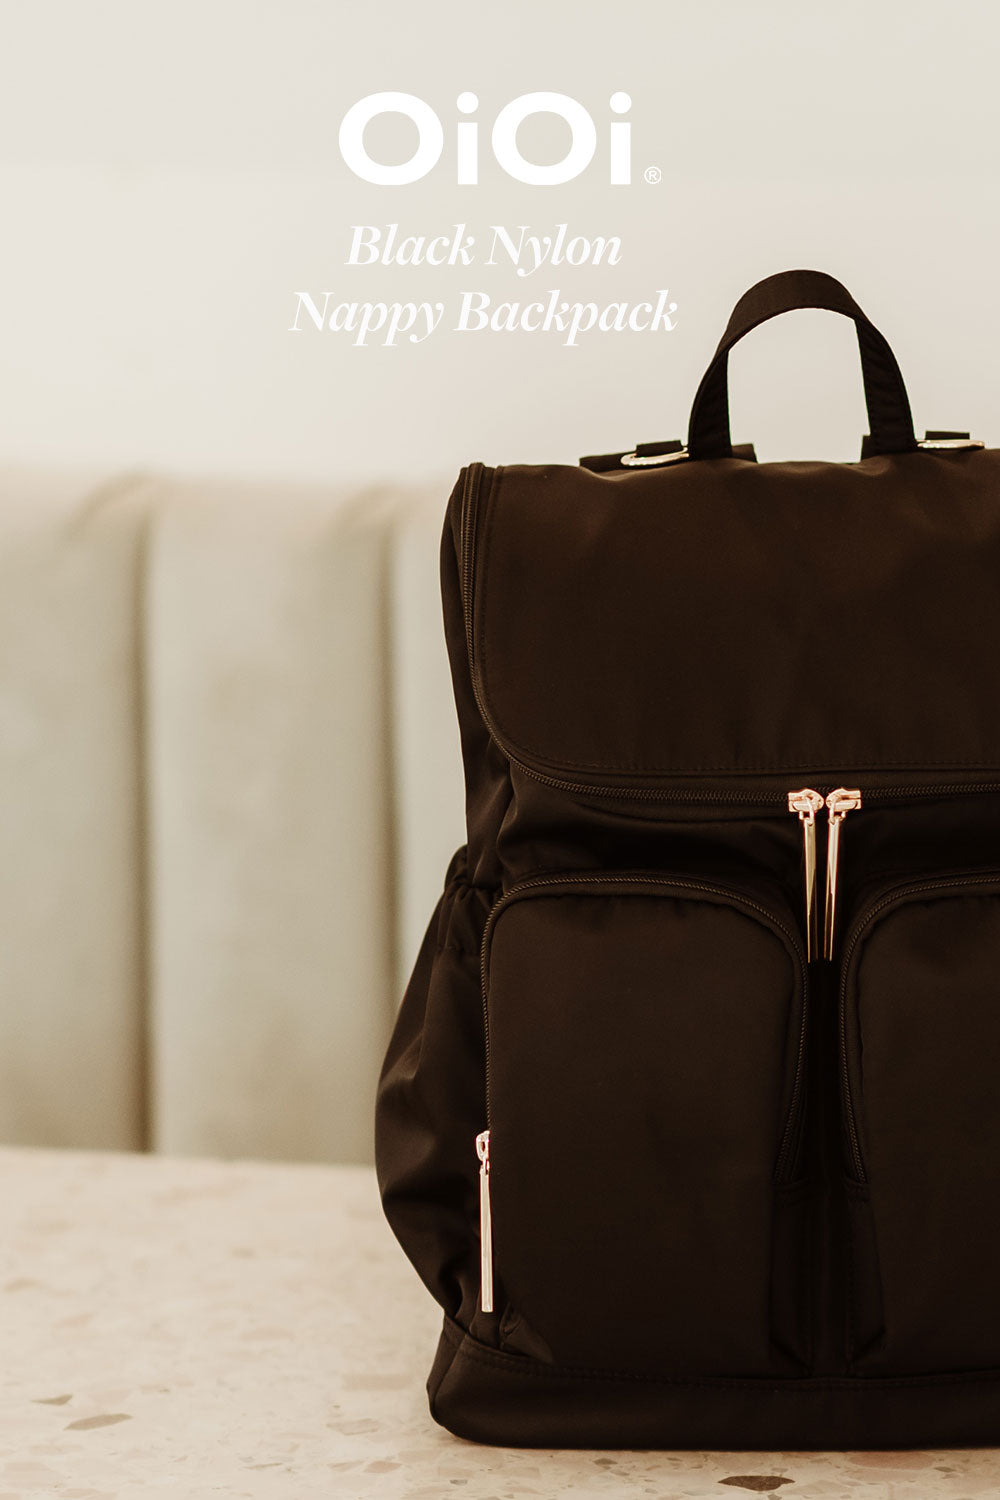 OiOi Black Nylon Nappy Backpack